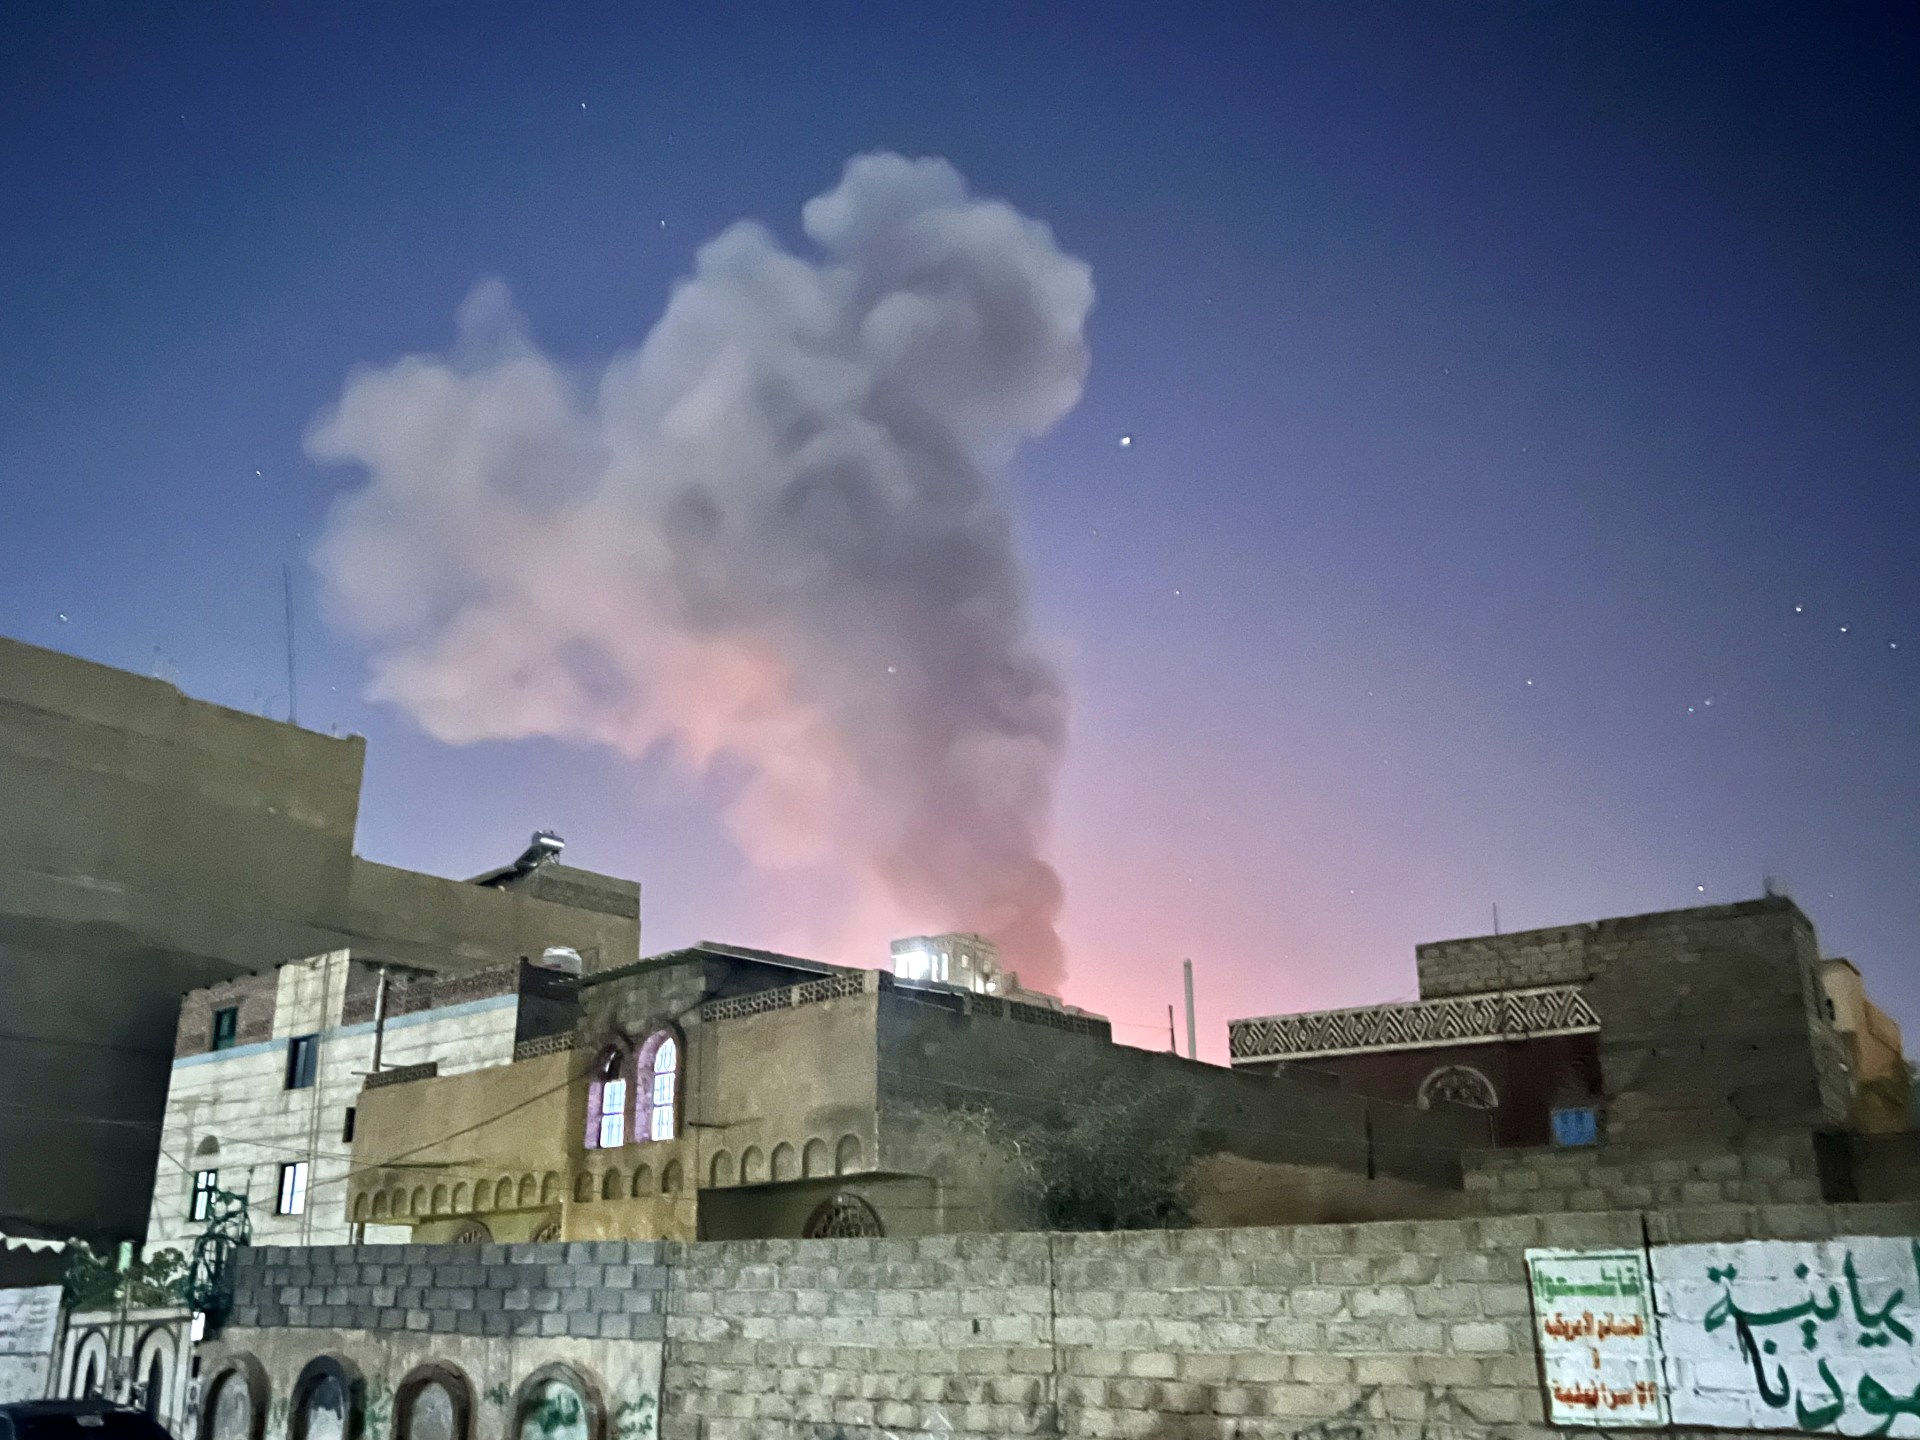 هجمات أميركية جديدة باليمن والحوثيون: لن تمنعنا الغارات من استهداف السفن | أخبار – البوكس نيوز